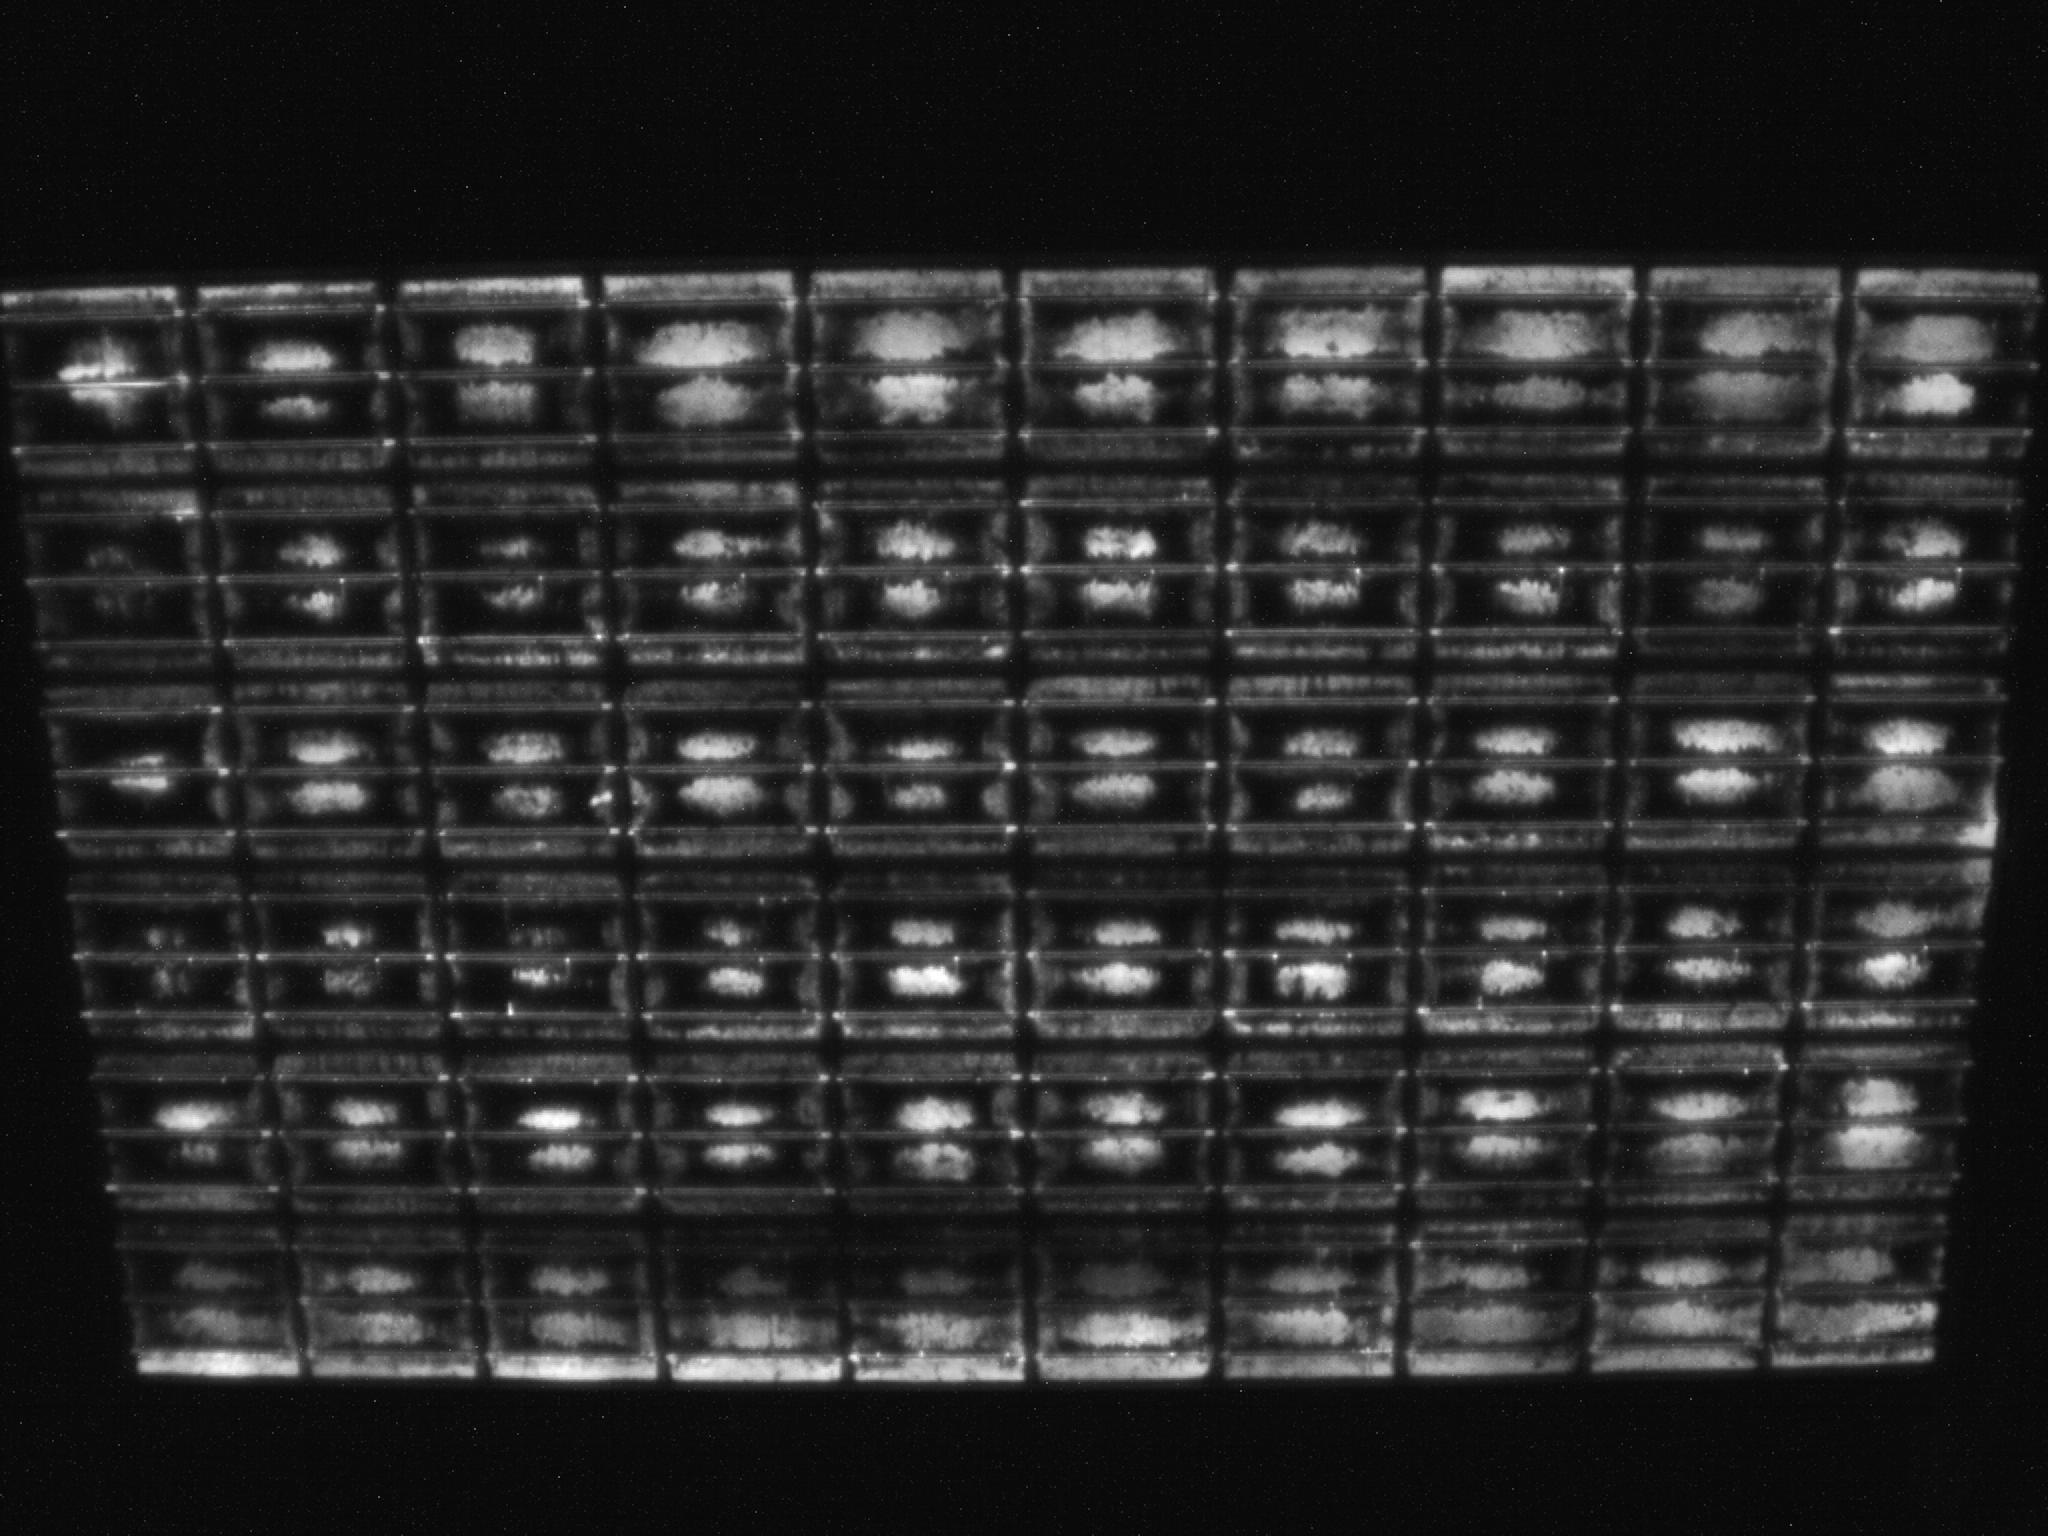 Pagina 8 DHT 4.000 uur Elektroluminescentie-opname na 4000 uur DHT-test: Bijna het volledige cellenvlak van de glas-foliemodule is inactief (zwart).